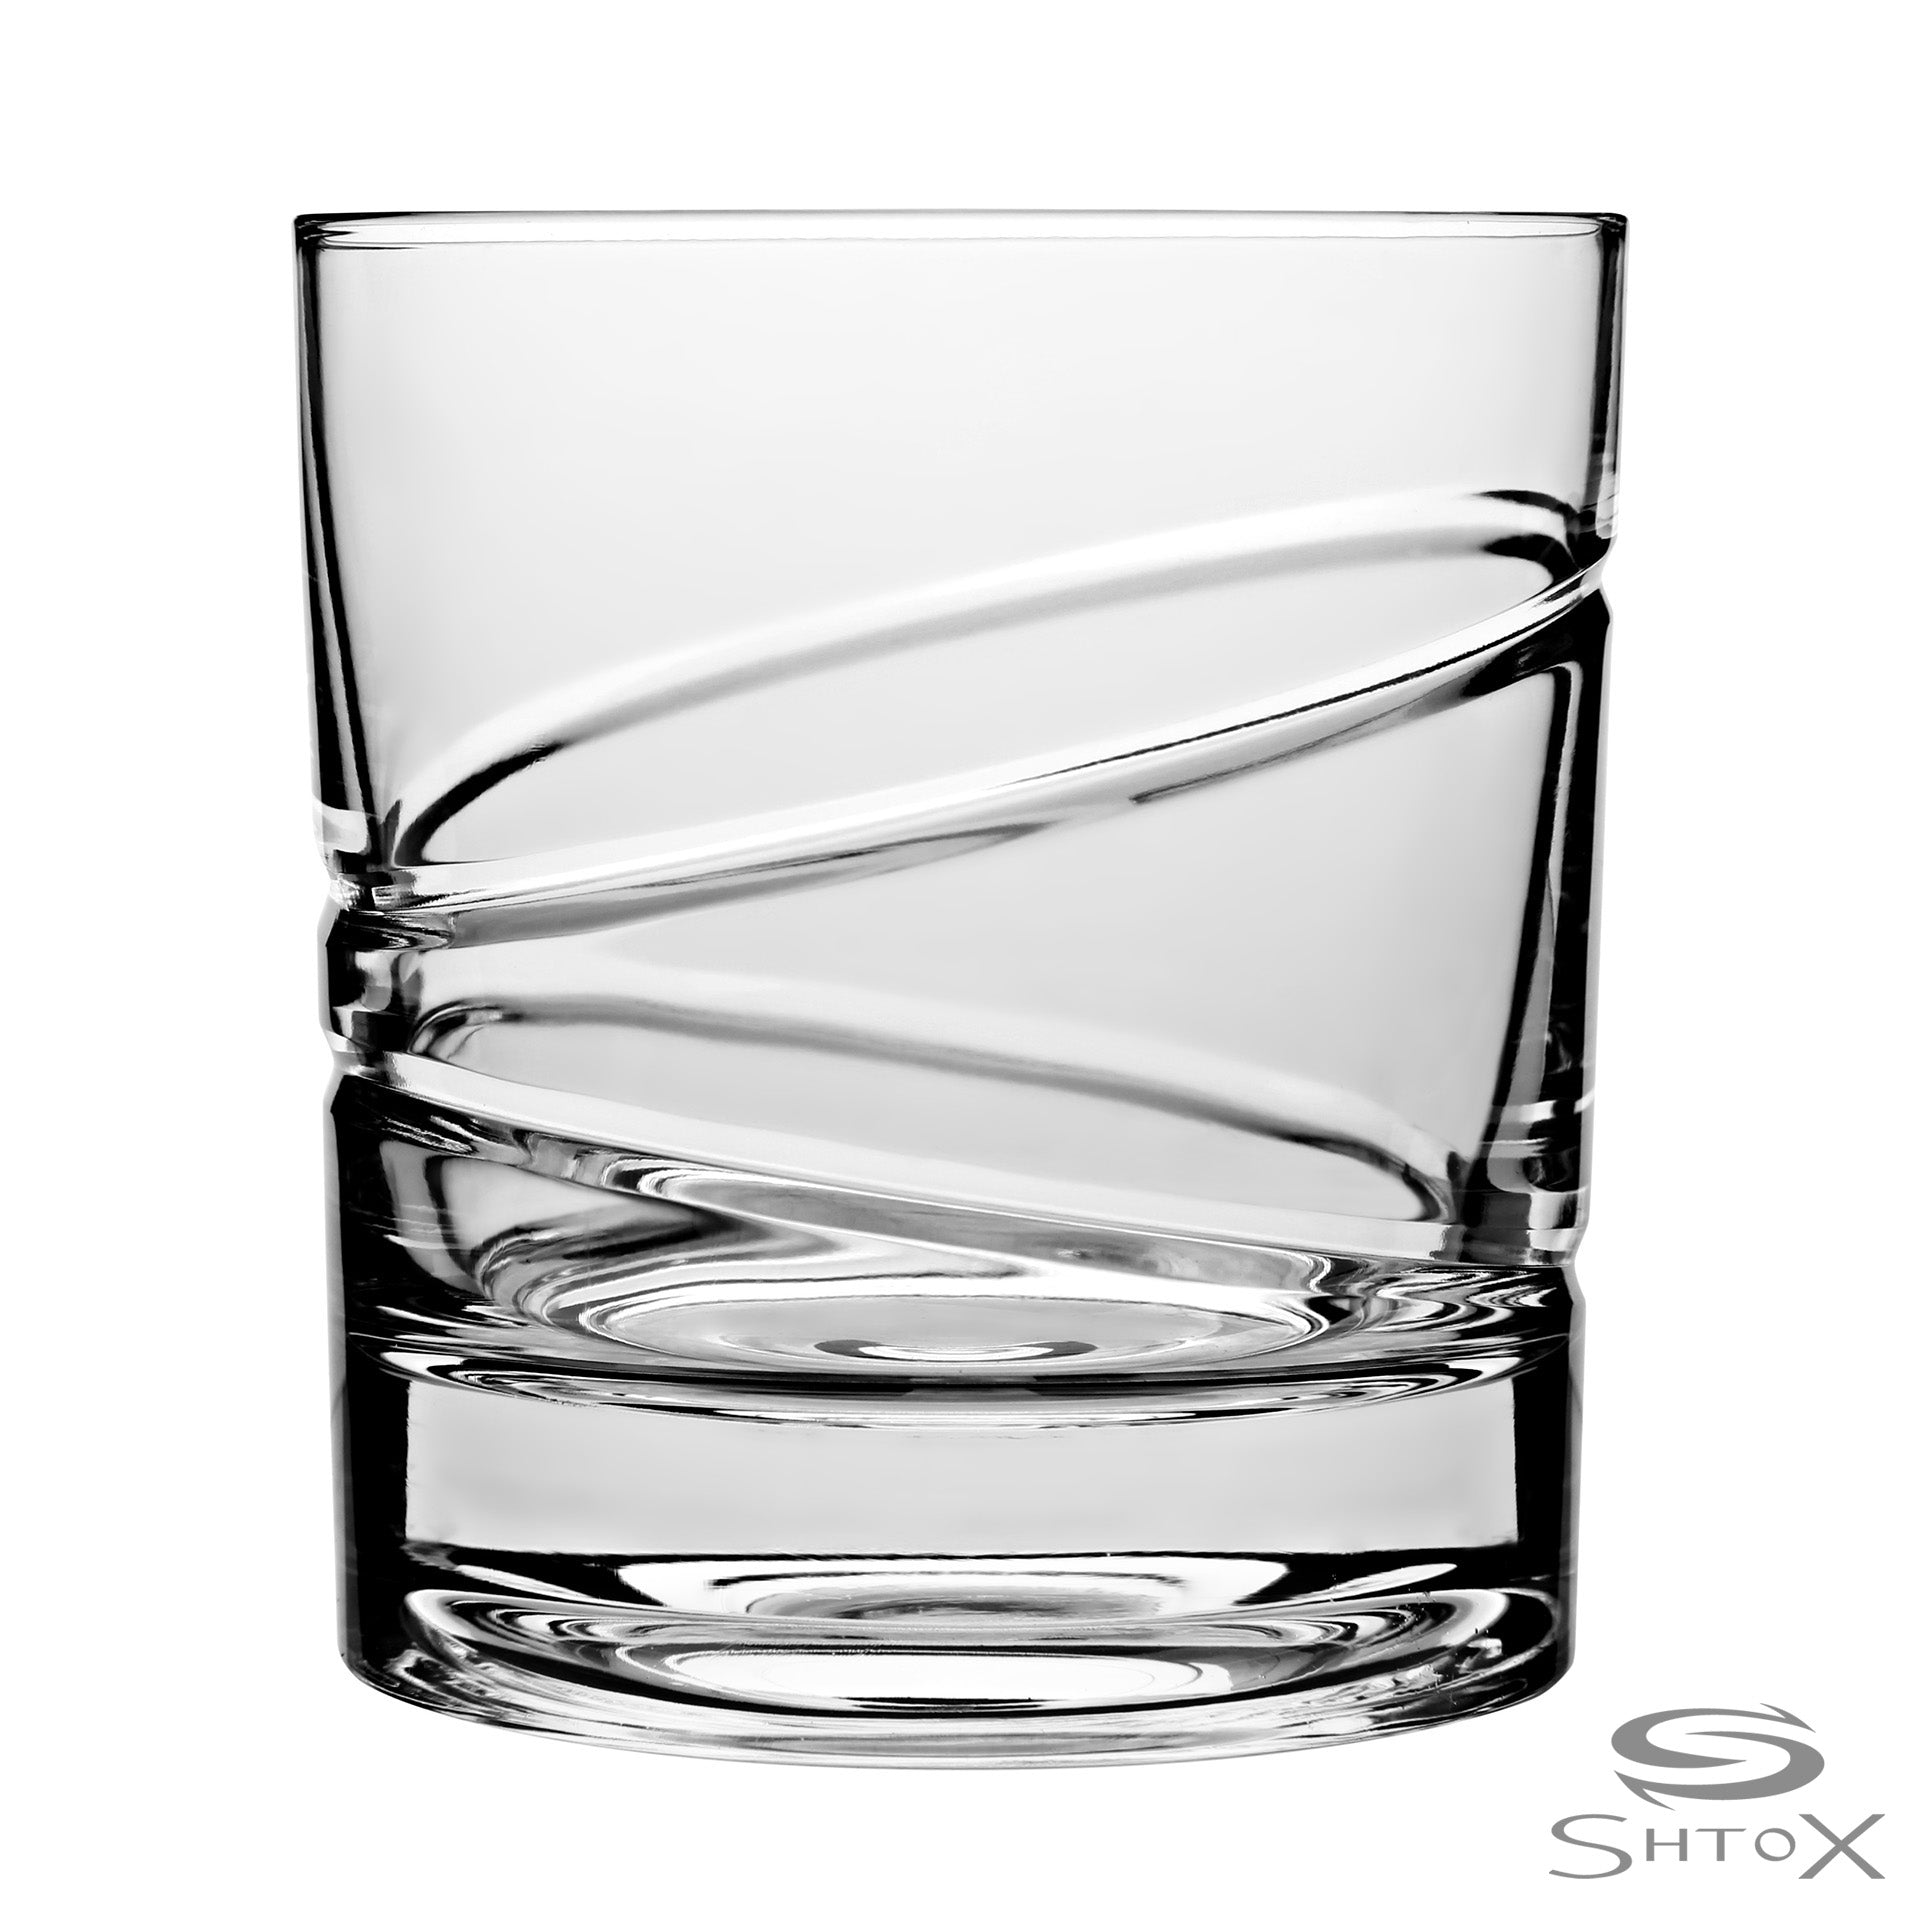 Shtox roterend whiskyglas (007) - Schreuder-kraan.shop